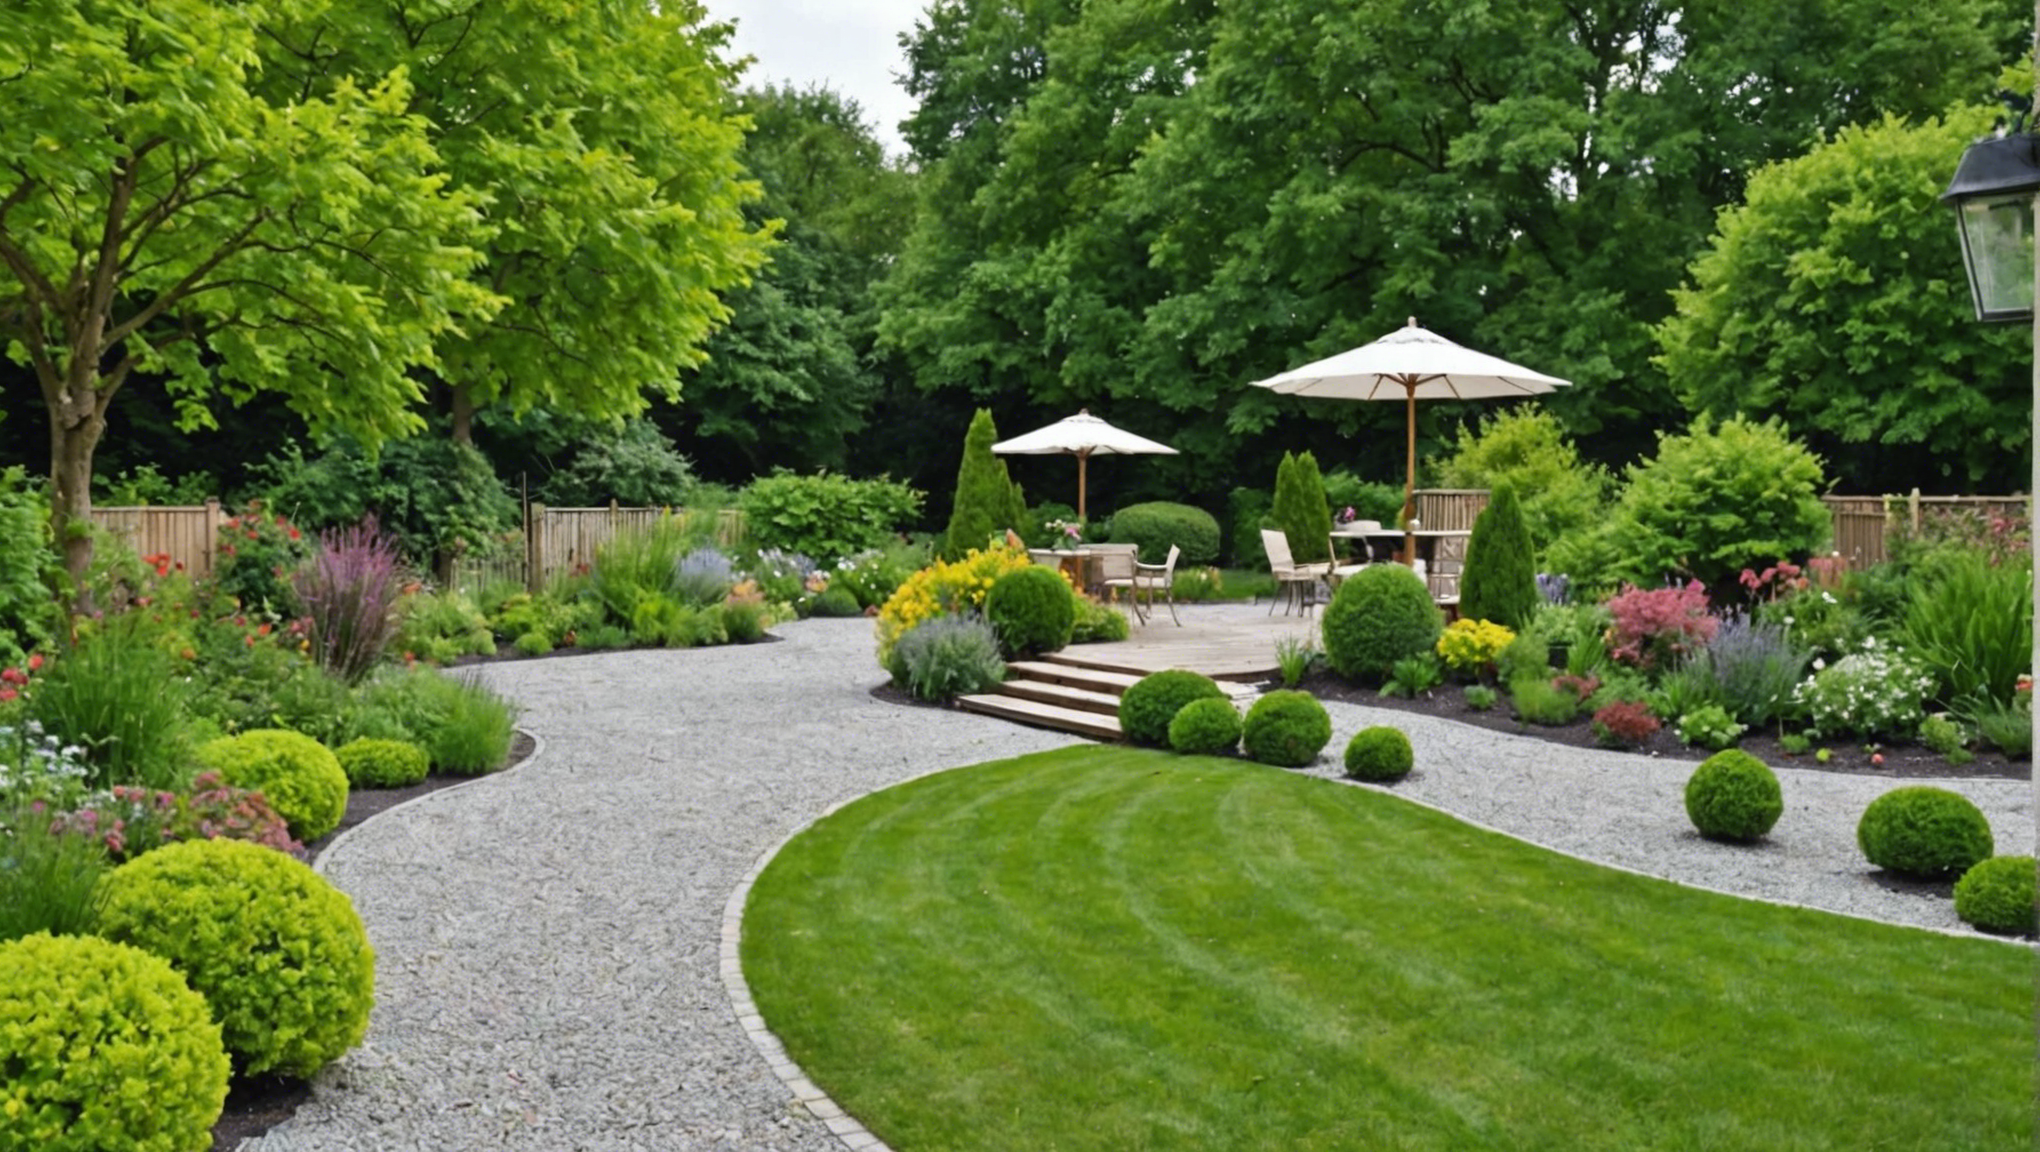 découvrez nos conseils pour aménager votre jardin de façon créative et fonctionnelle afin de créer un espace extérieur qui vous ressemble.